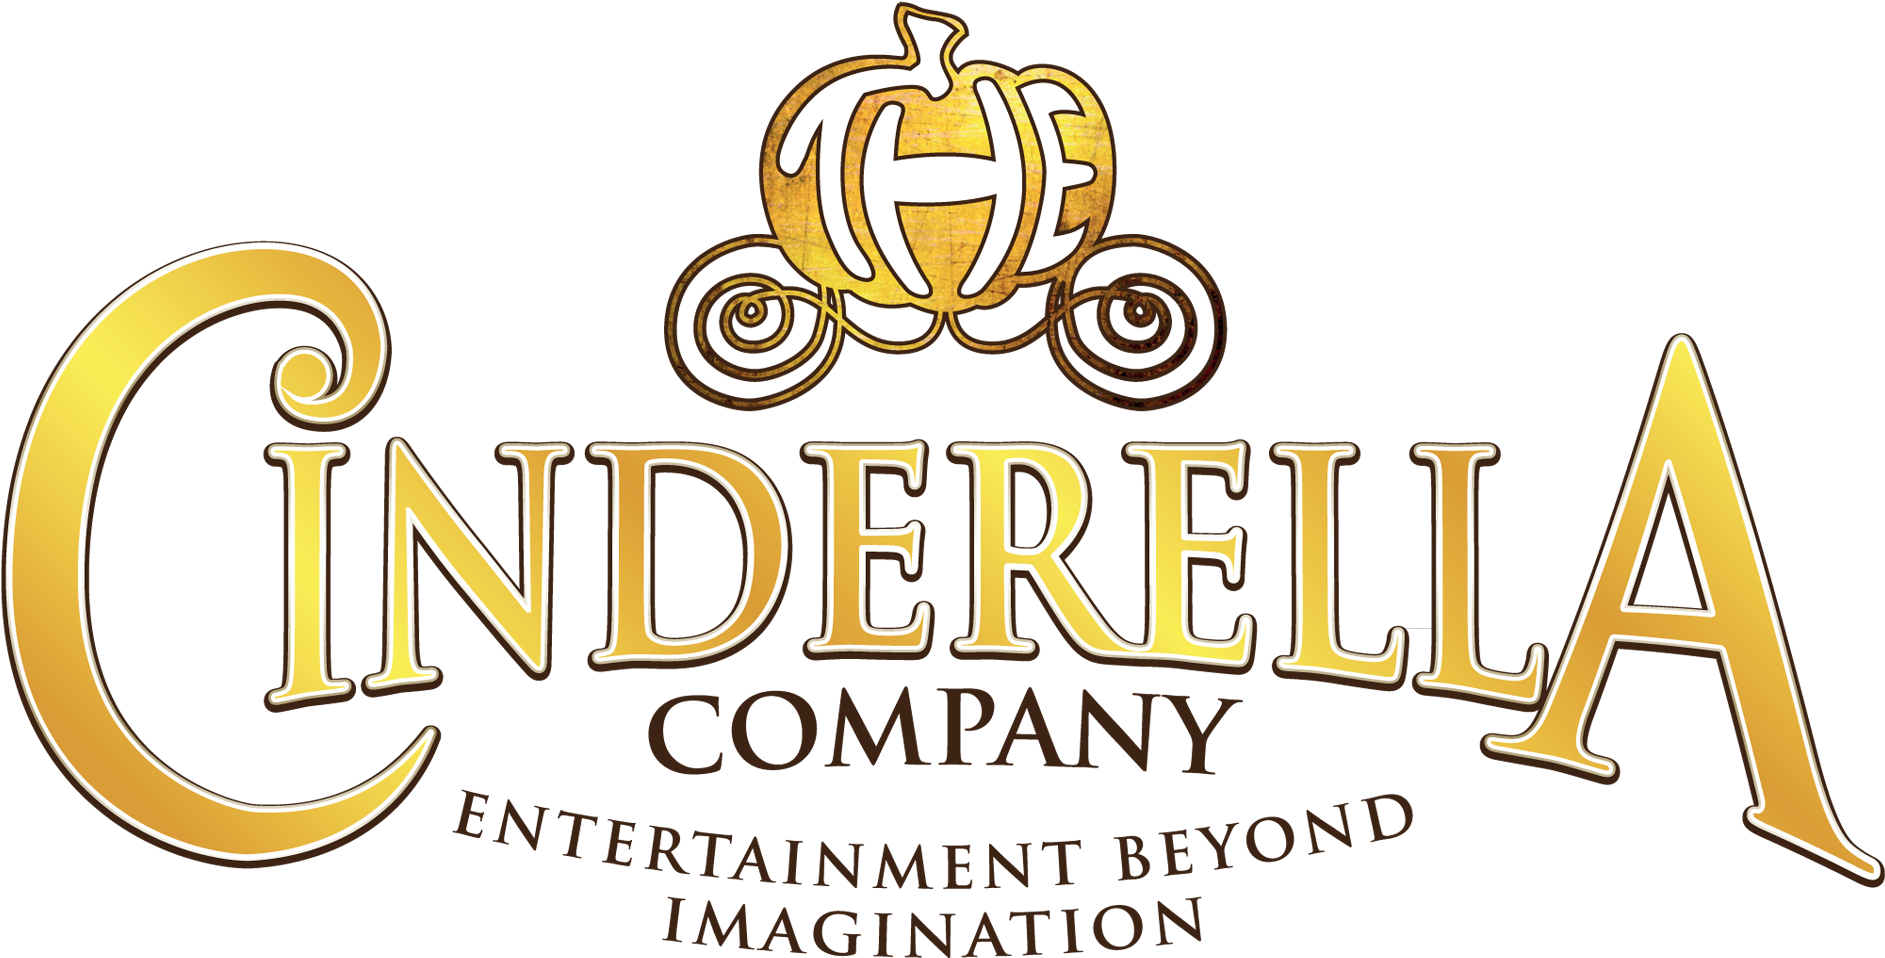 The Cinderella Company - Emblem Clipart (2030x1037), Png Download